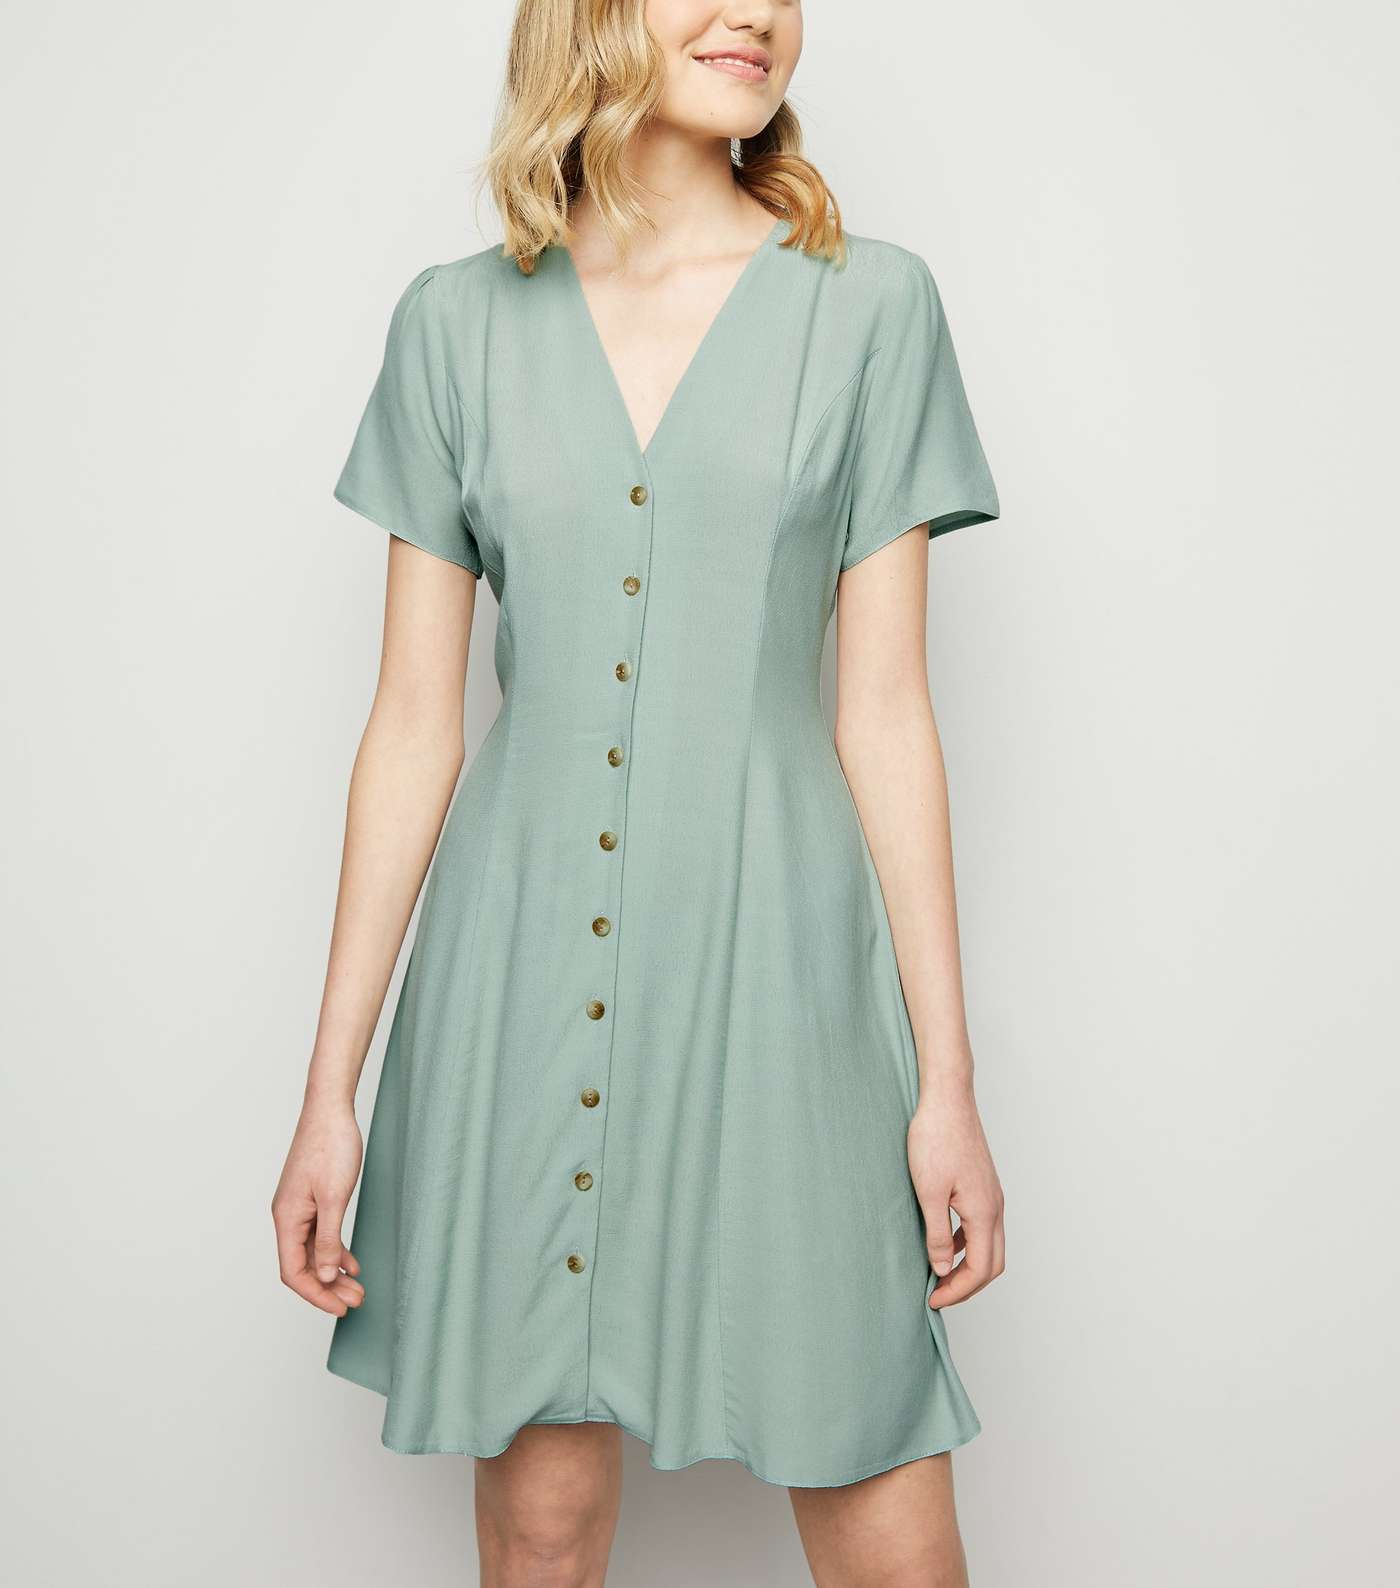 Mint Green Button Up Tea Dress